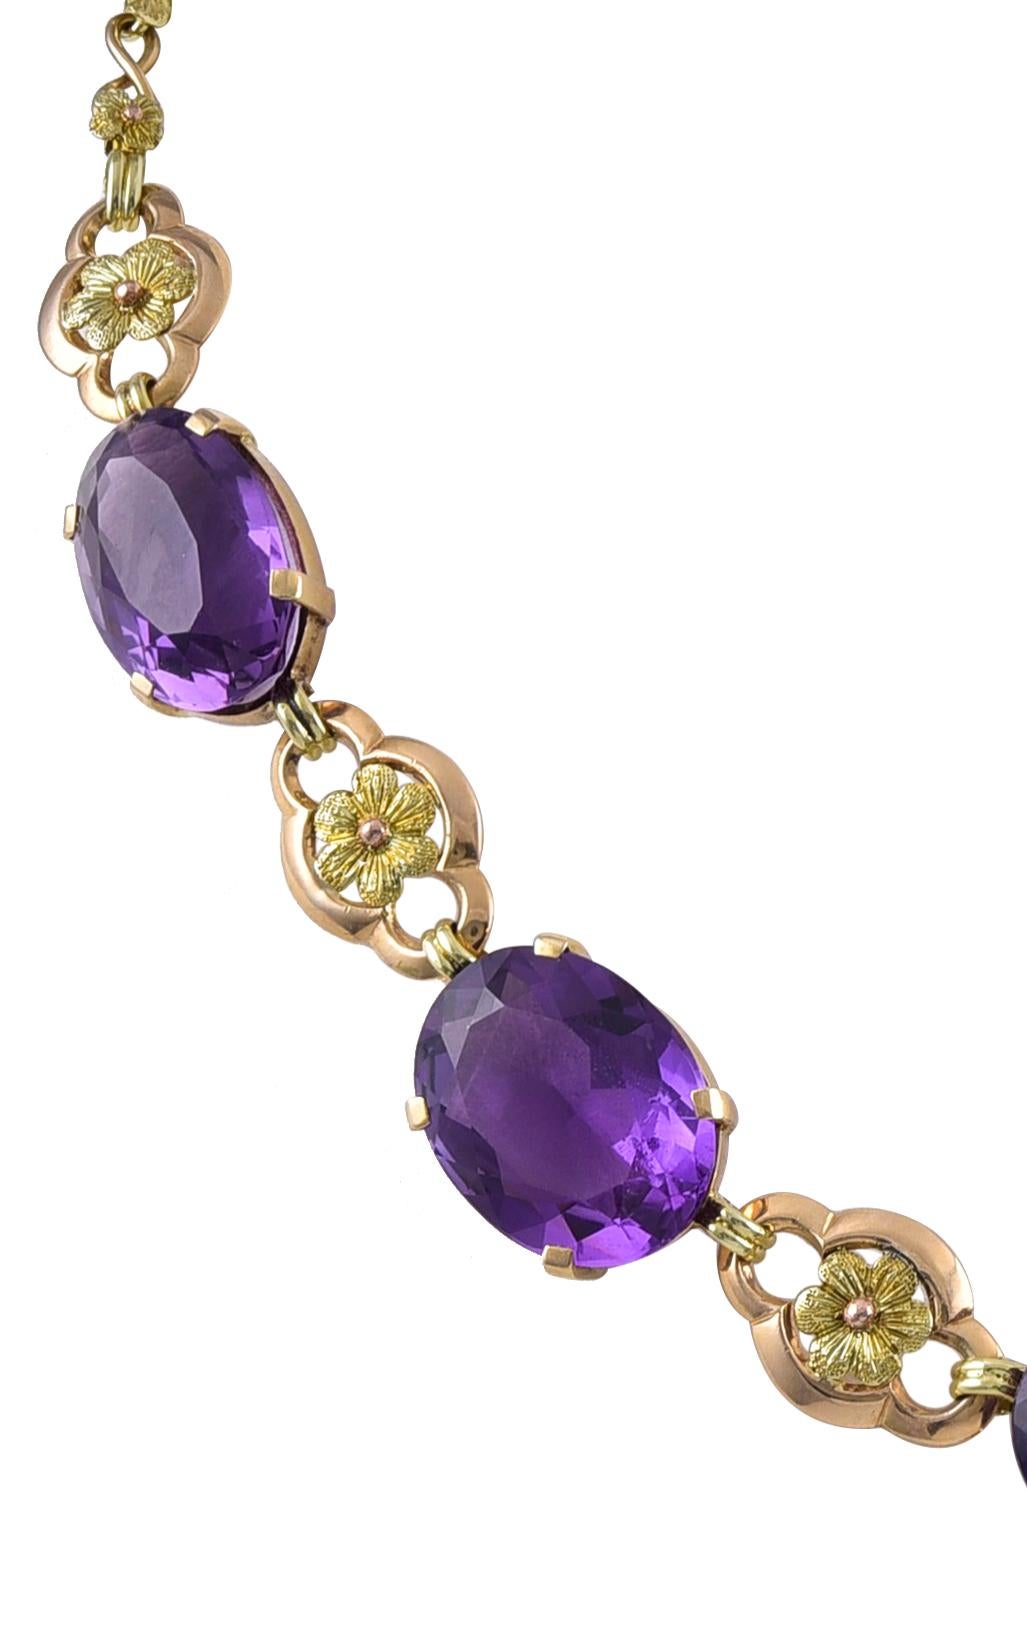 Women's Art Nouveau Gold and Amethyst Necklace